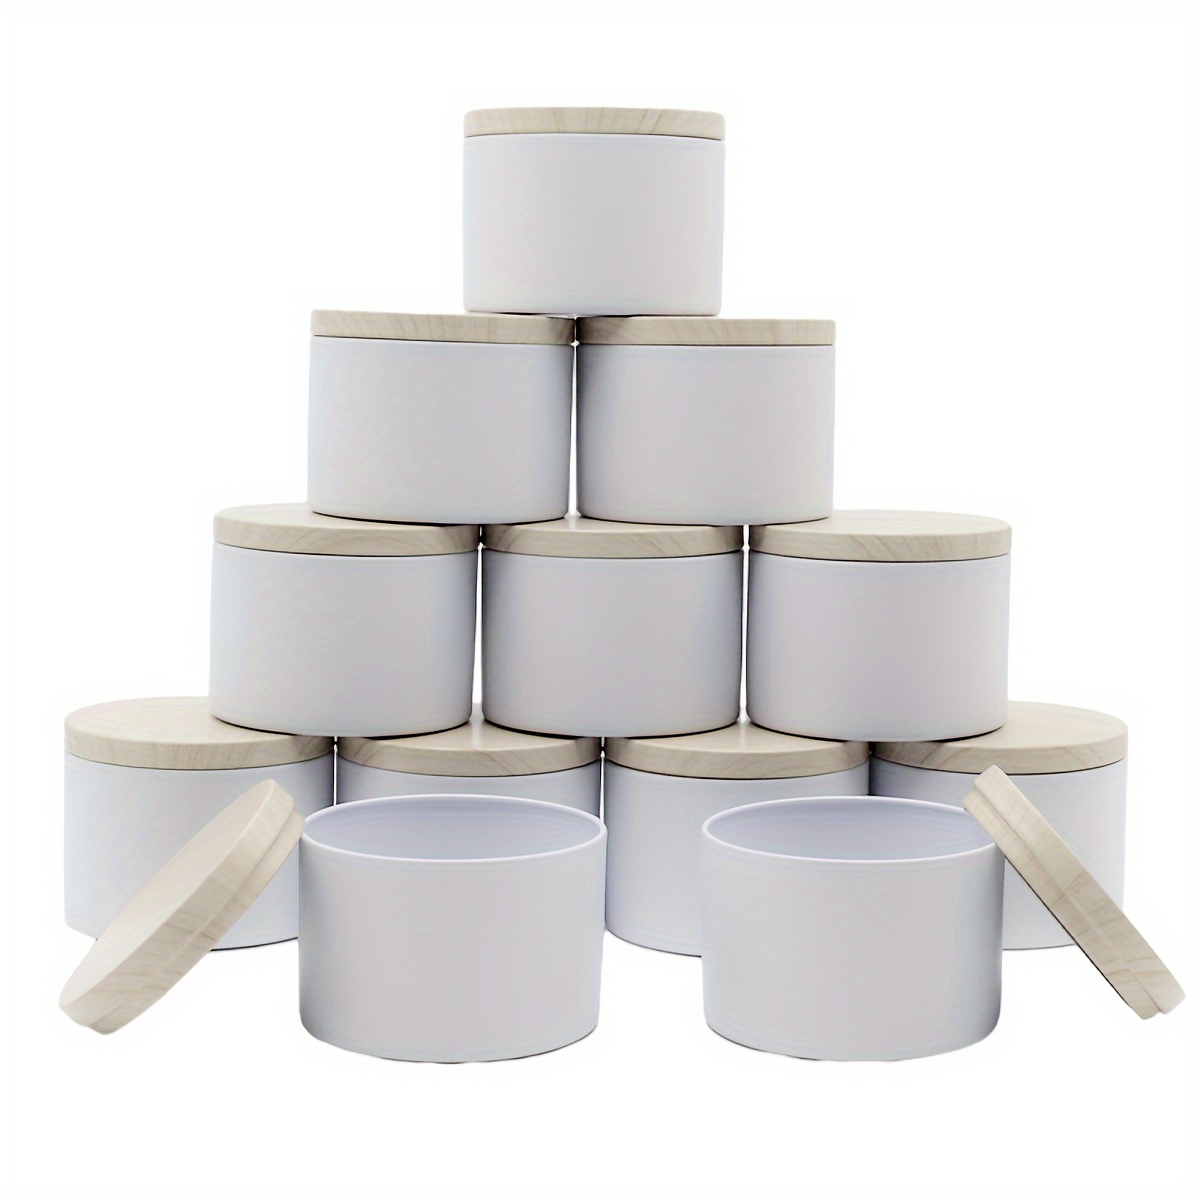 Recipientes de vela de aluminio de 2.0 in x 1.4 in, latas redondas de metal  con tapa deslizable para manualidades, hacer velas, almacenamiento y arte